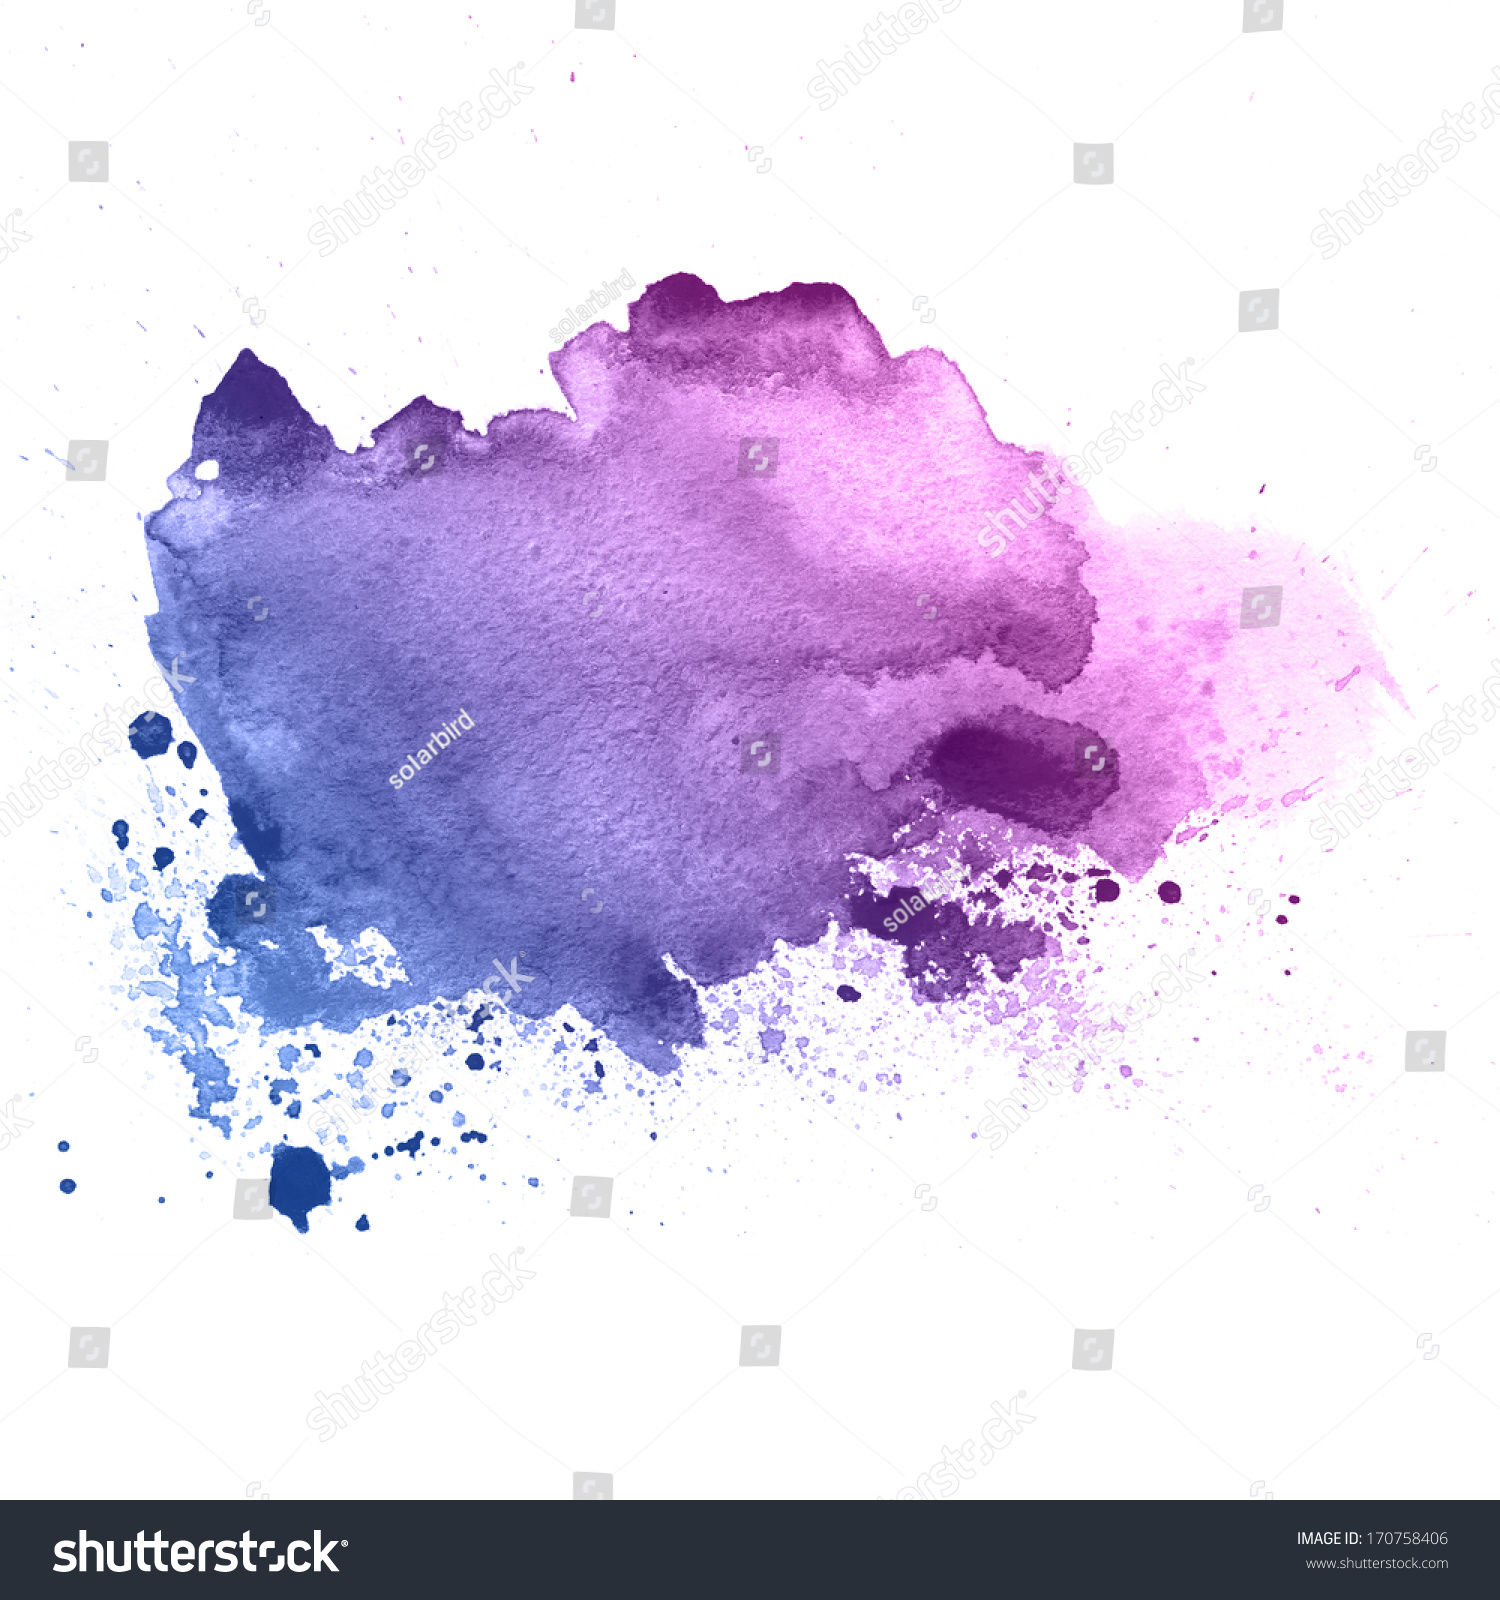 紫罗兰色的水彩滴纹理-背景/素材,抽象-海洛创意()-合